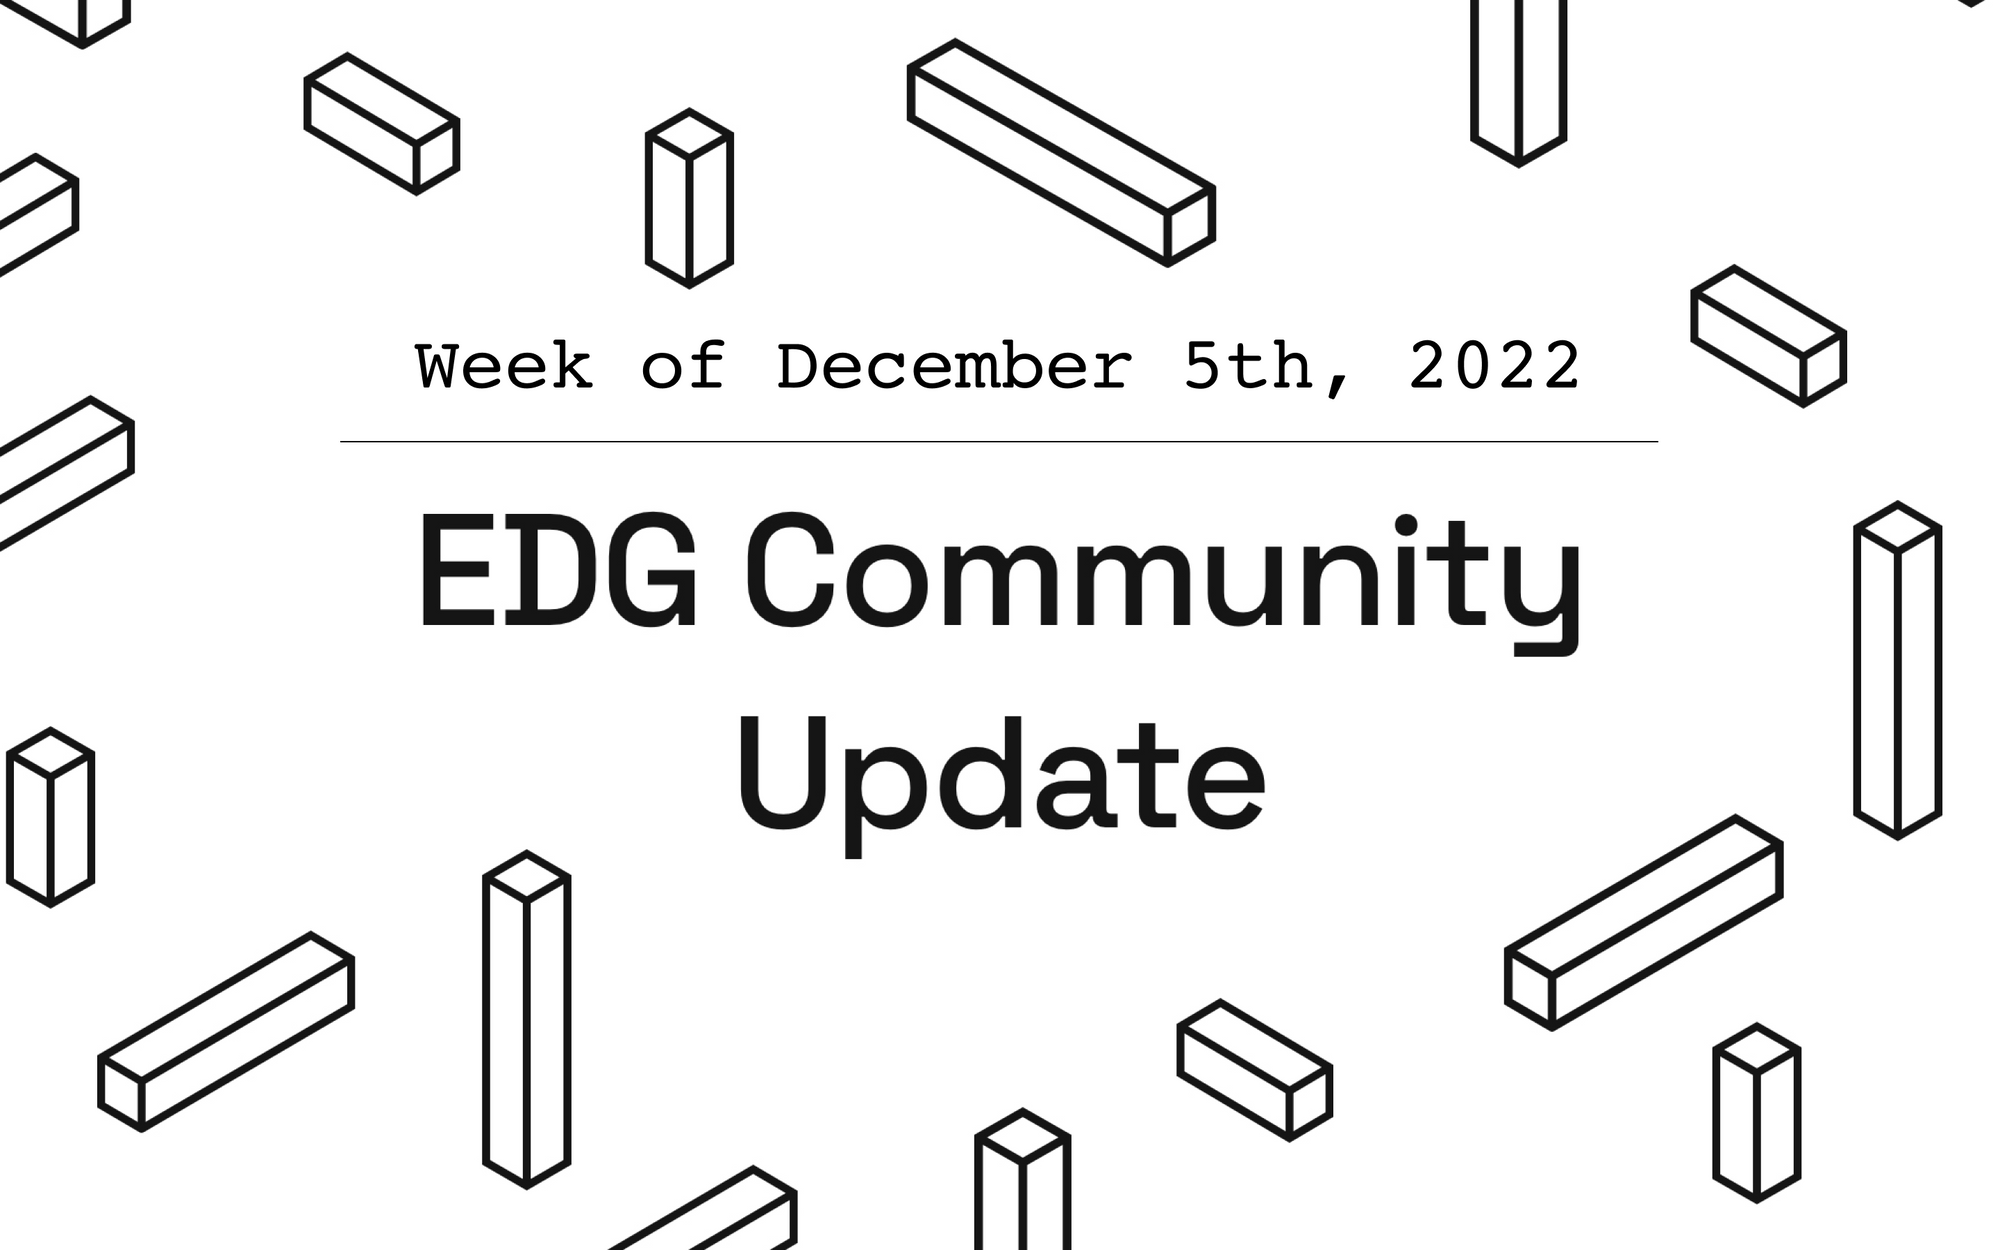 EDG Community Update: Week of December 5th, 2022